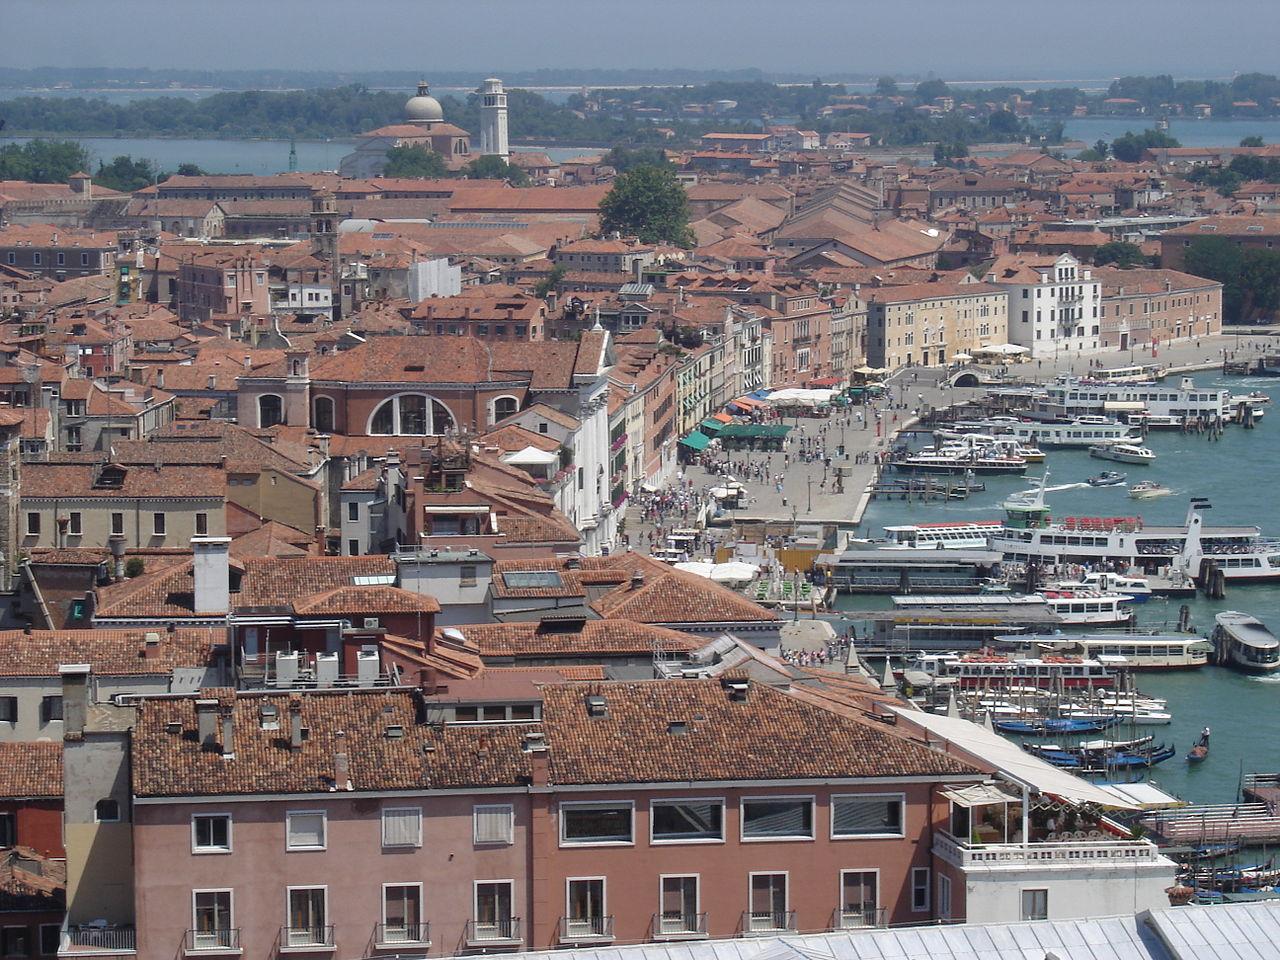 Рива дельи скьявони в венеции